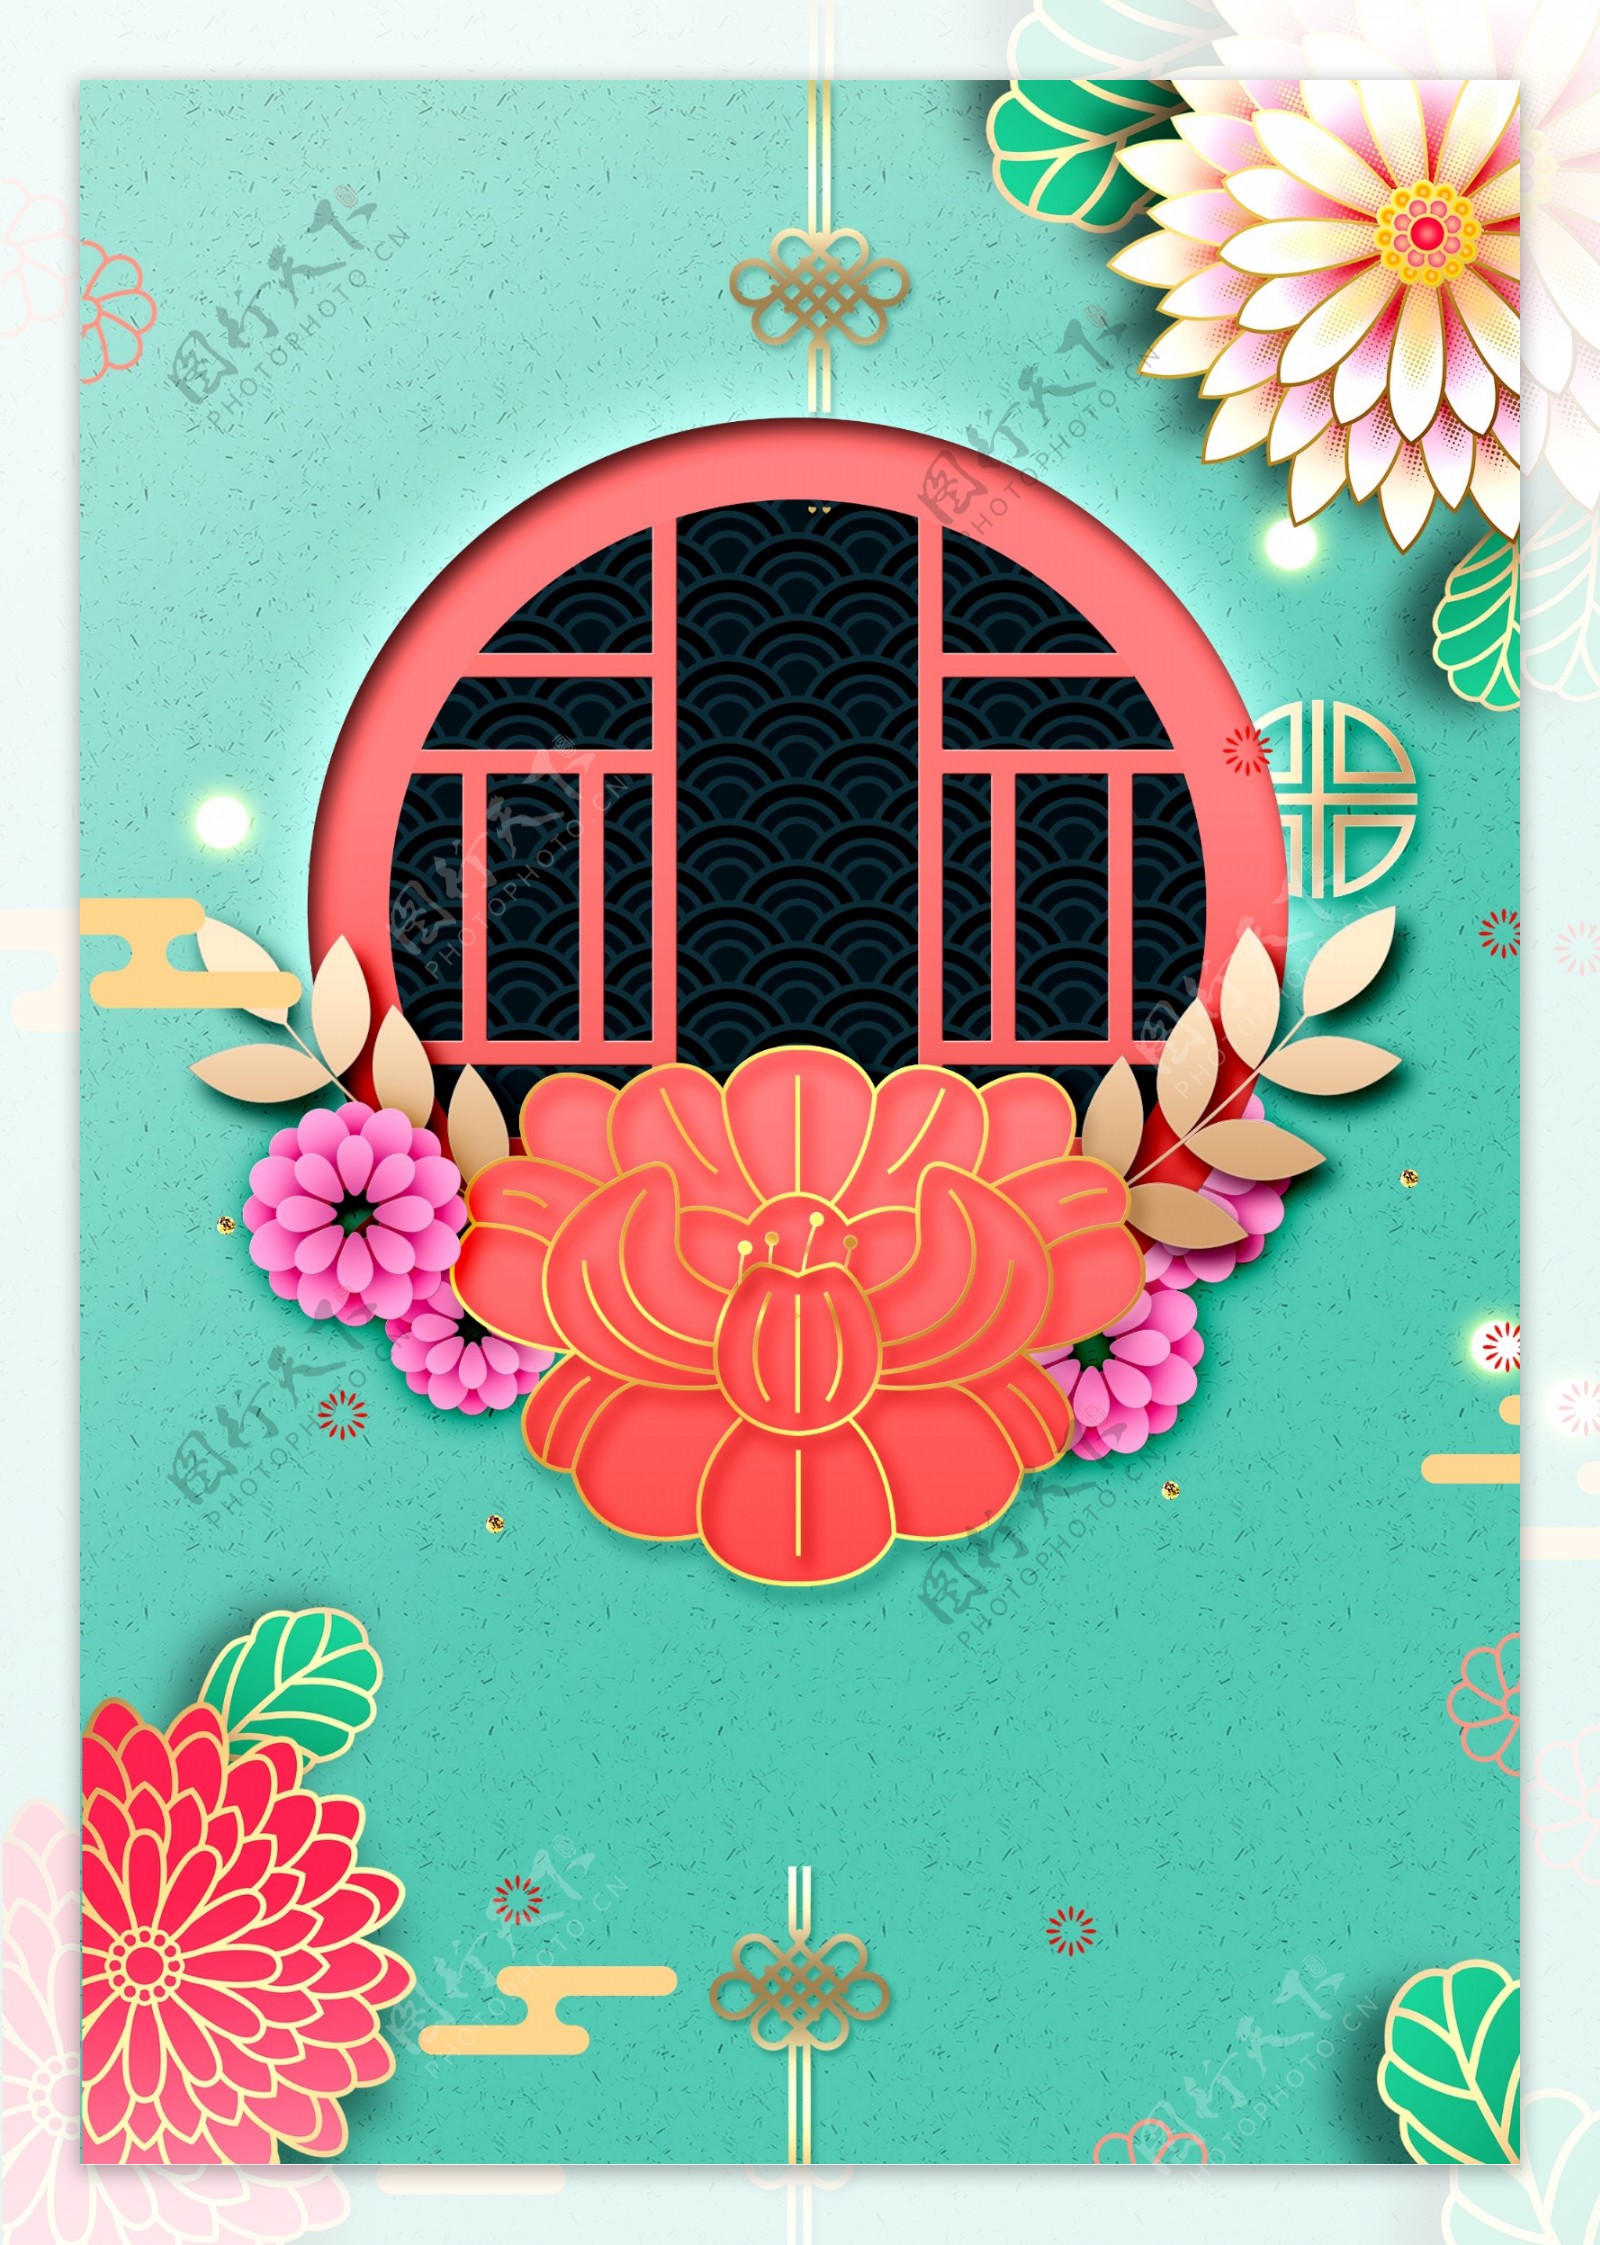 中国风艺术花朵新年背景素材